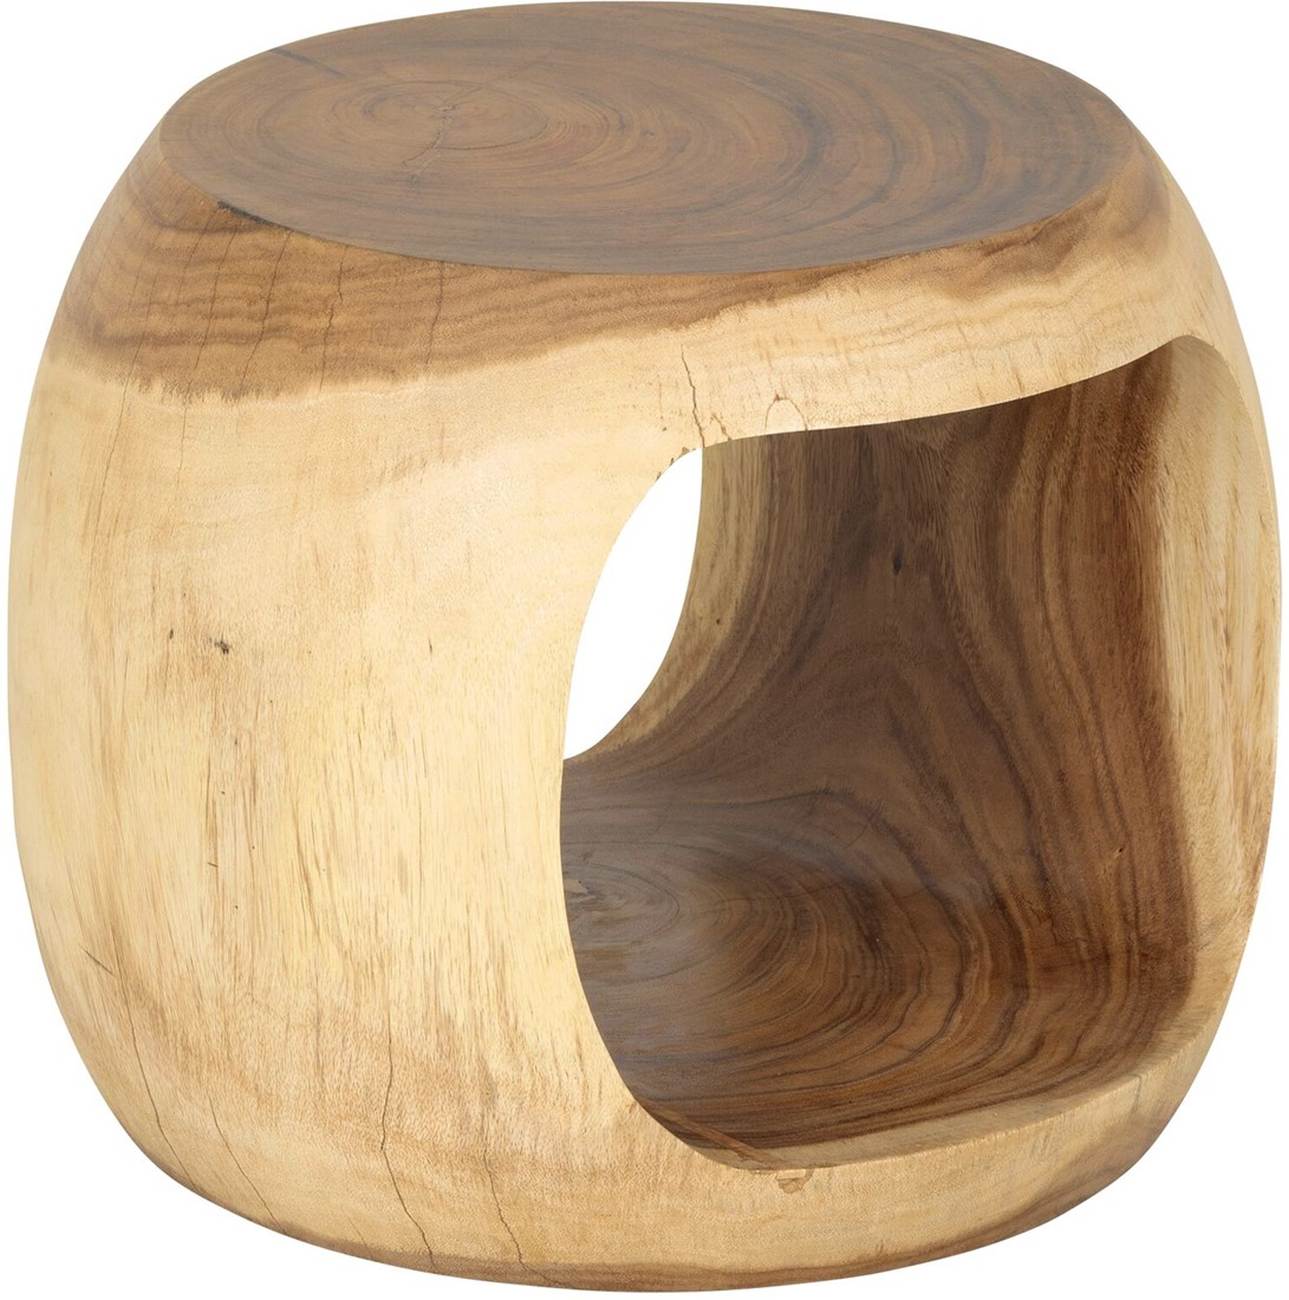 Der Beistelltisch Paso überzeugt mit seinem modernen Stil. Gefertigt wurde er aus Suarholz, welches einen natürlichen Farbton besitzt. Der Tisch besitzt einen Durchmesser von 50 cm